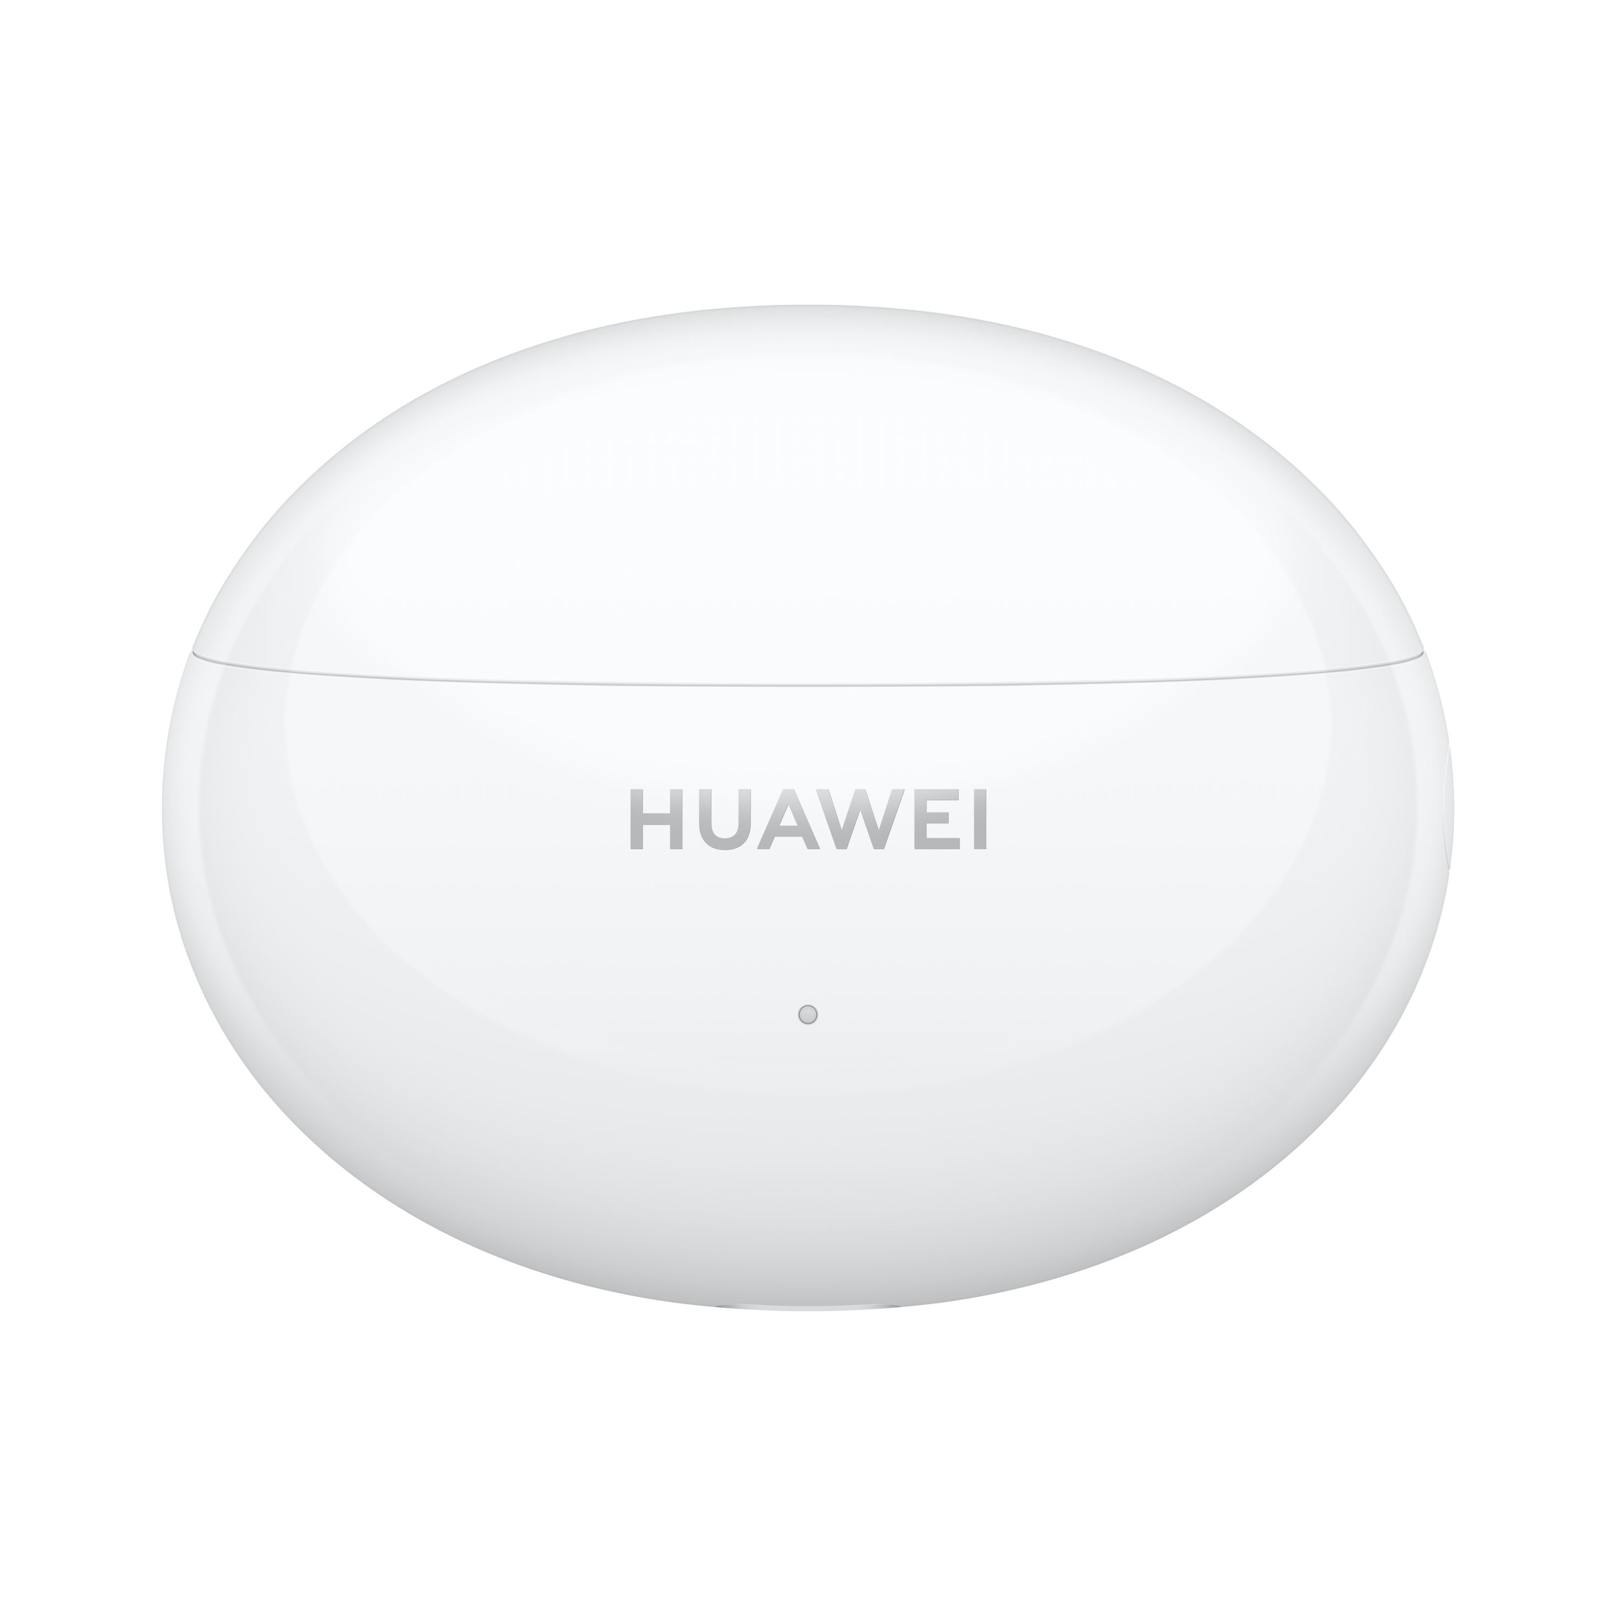 ... wurde laut Huawei auch die Konnektivität im Vergleich zum Vorgängermodell. Und: "In Bezug auf Akkulaufzeit, Tragekomfort und Sprachqualität wurden sie erheblich verbessert".